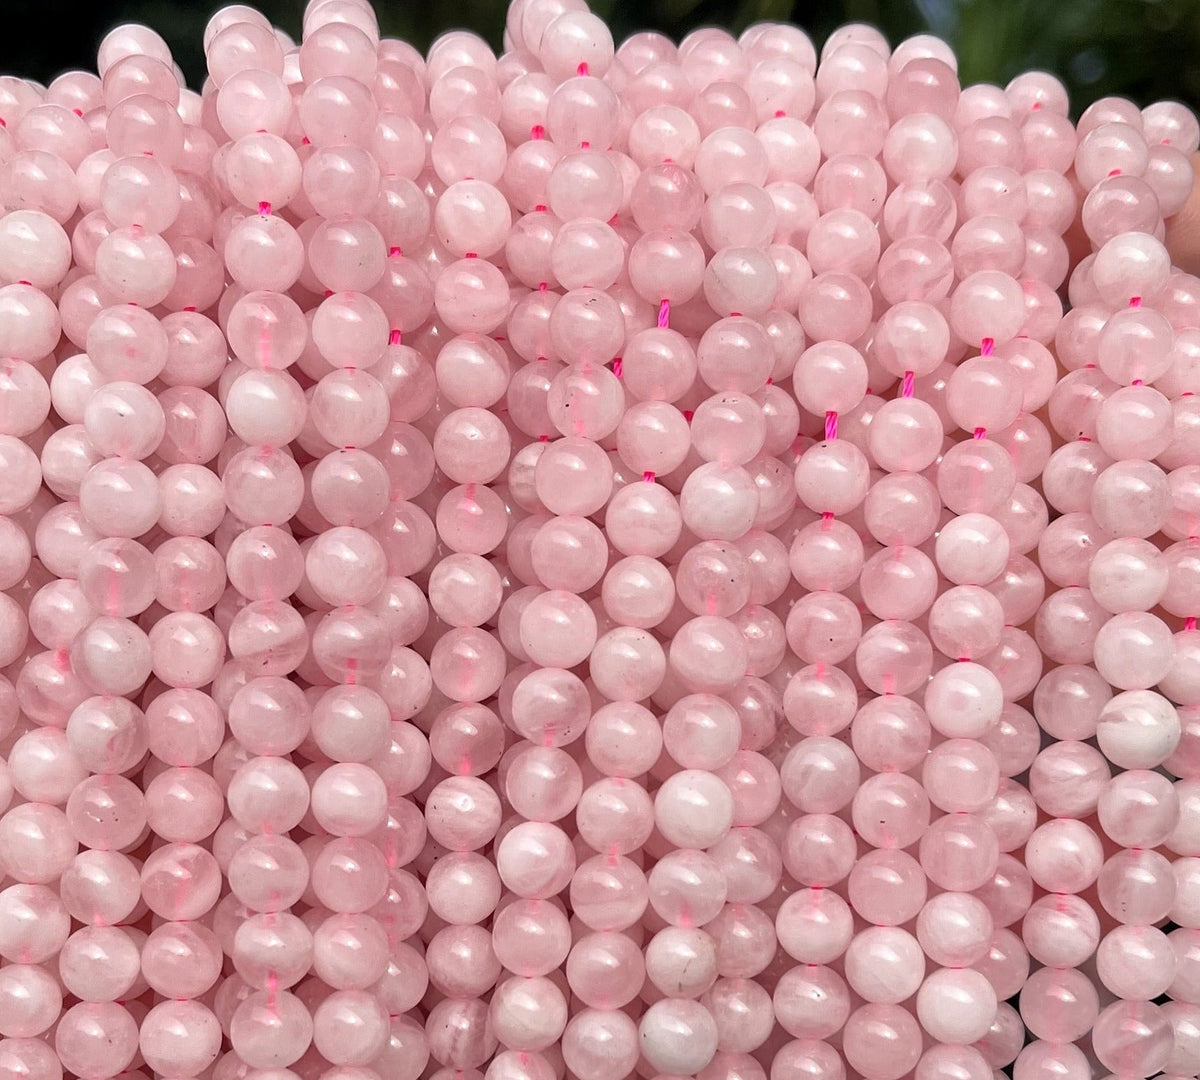 Madagascar Rose Quartz 6mm round natural gemstone beads 15.5" strand - Oz Beads 